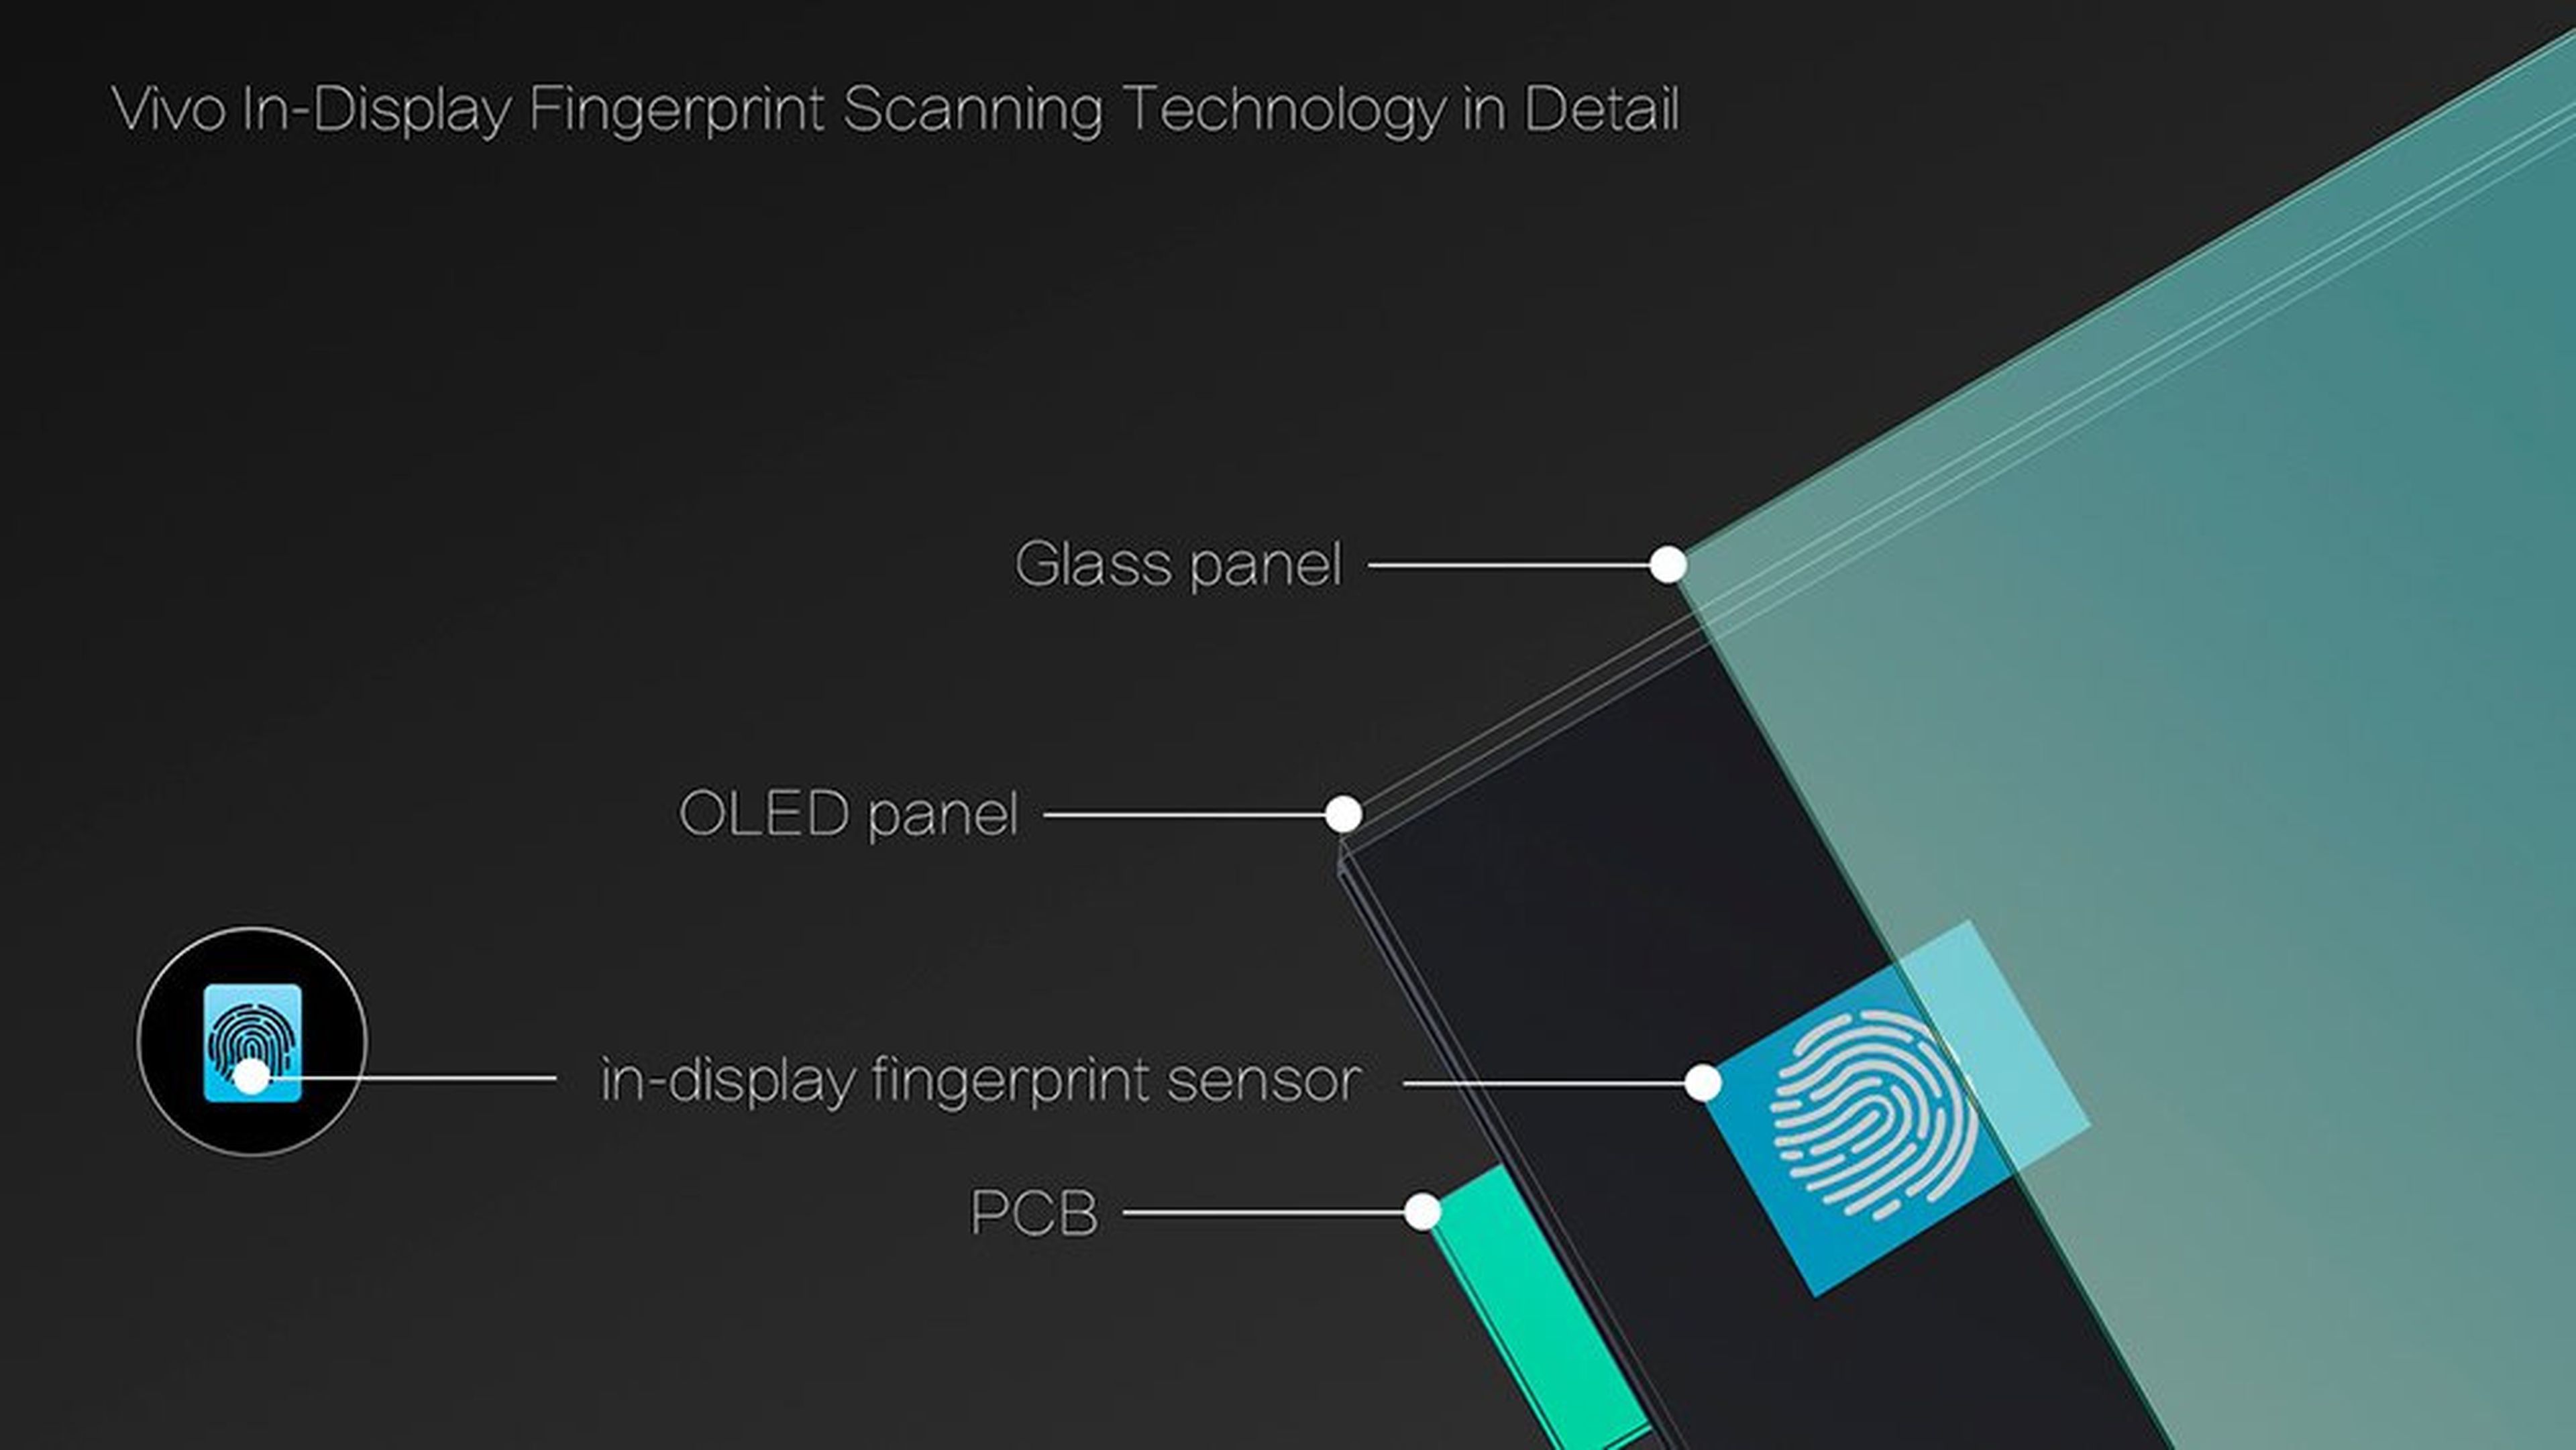 Vivo coloca el sensor "Clear ID" bajo el panel OLED.